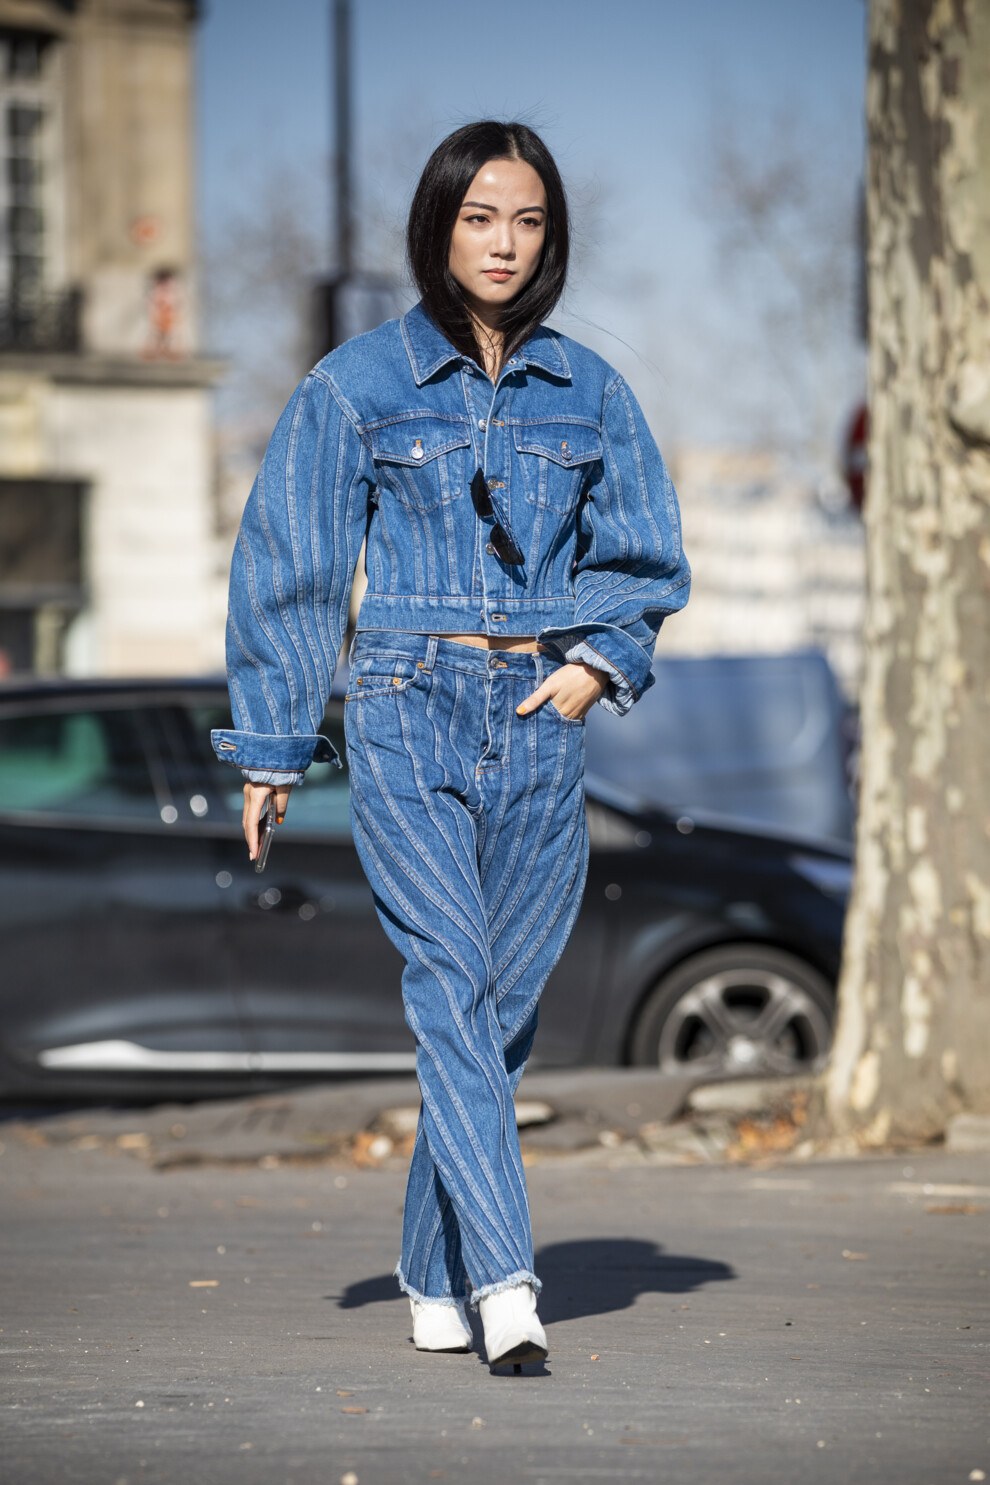 Пиджак под джинсы: как выбрать, цветовое решение, стильные модели и фасоны